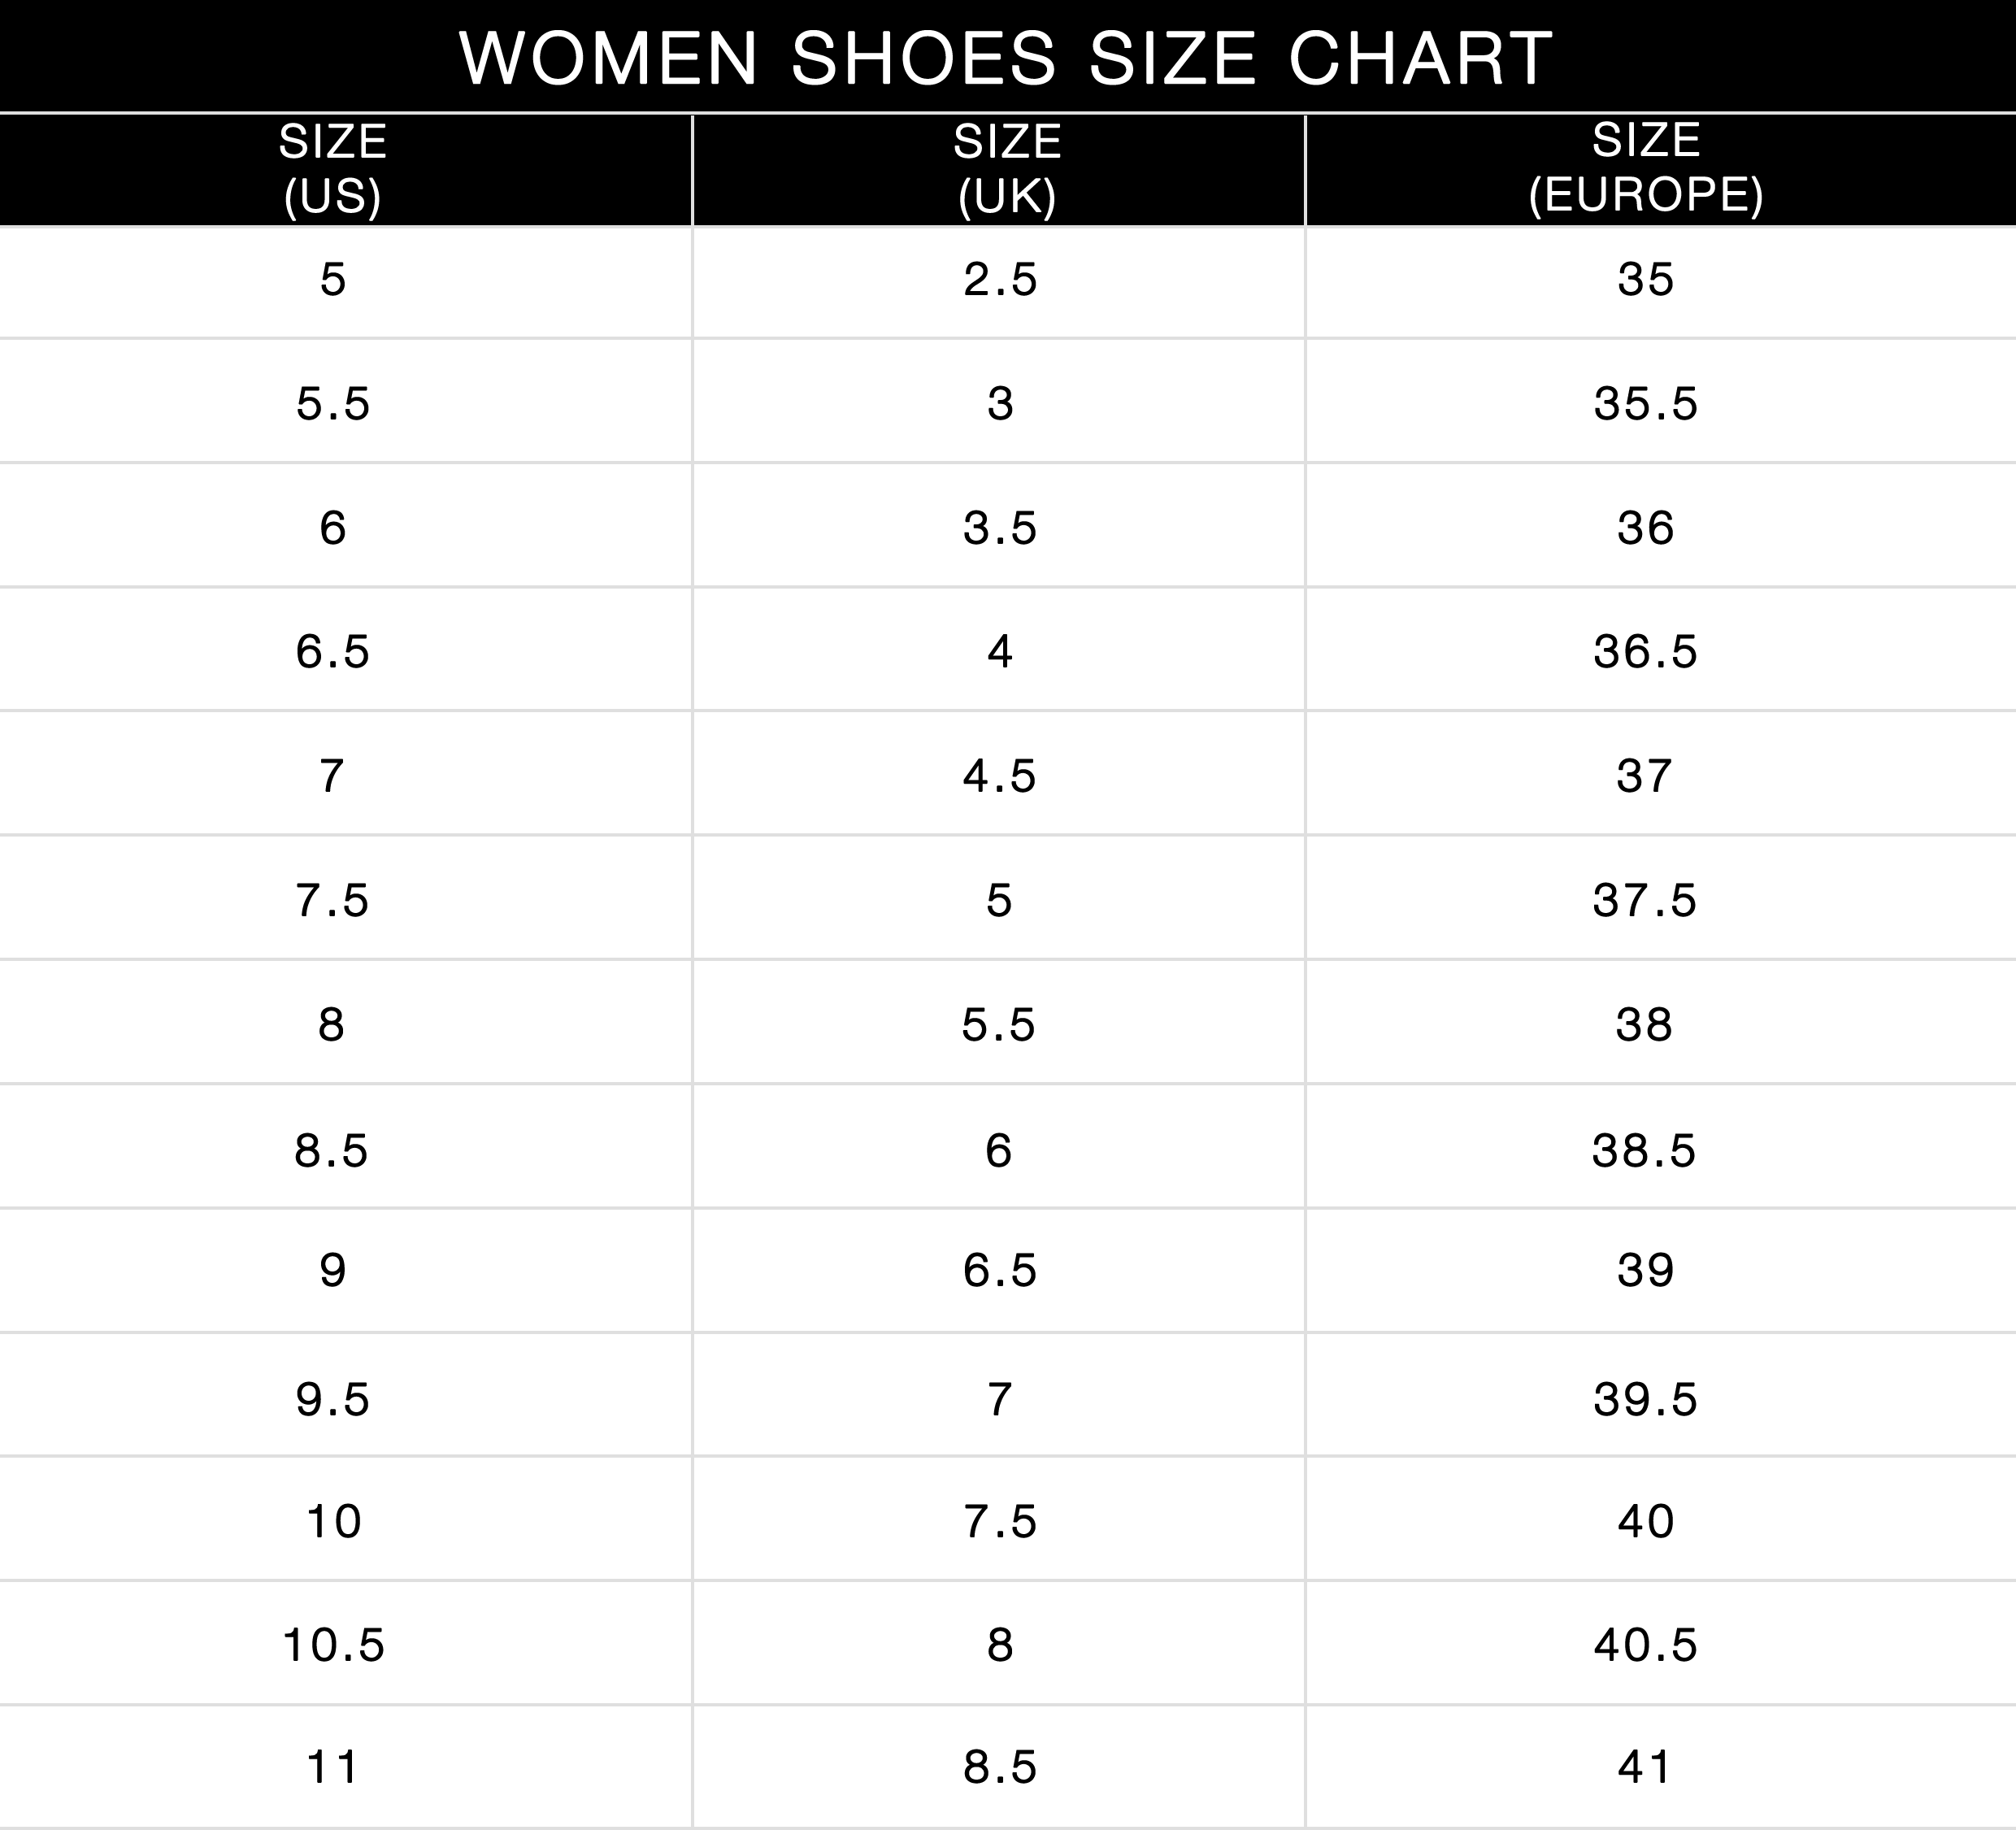 ralph lauren shoe size chart